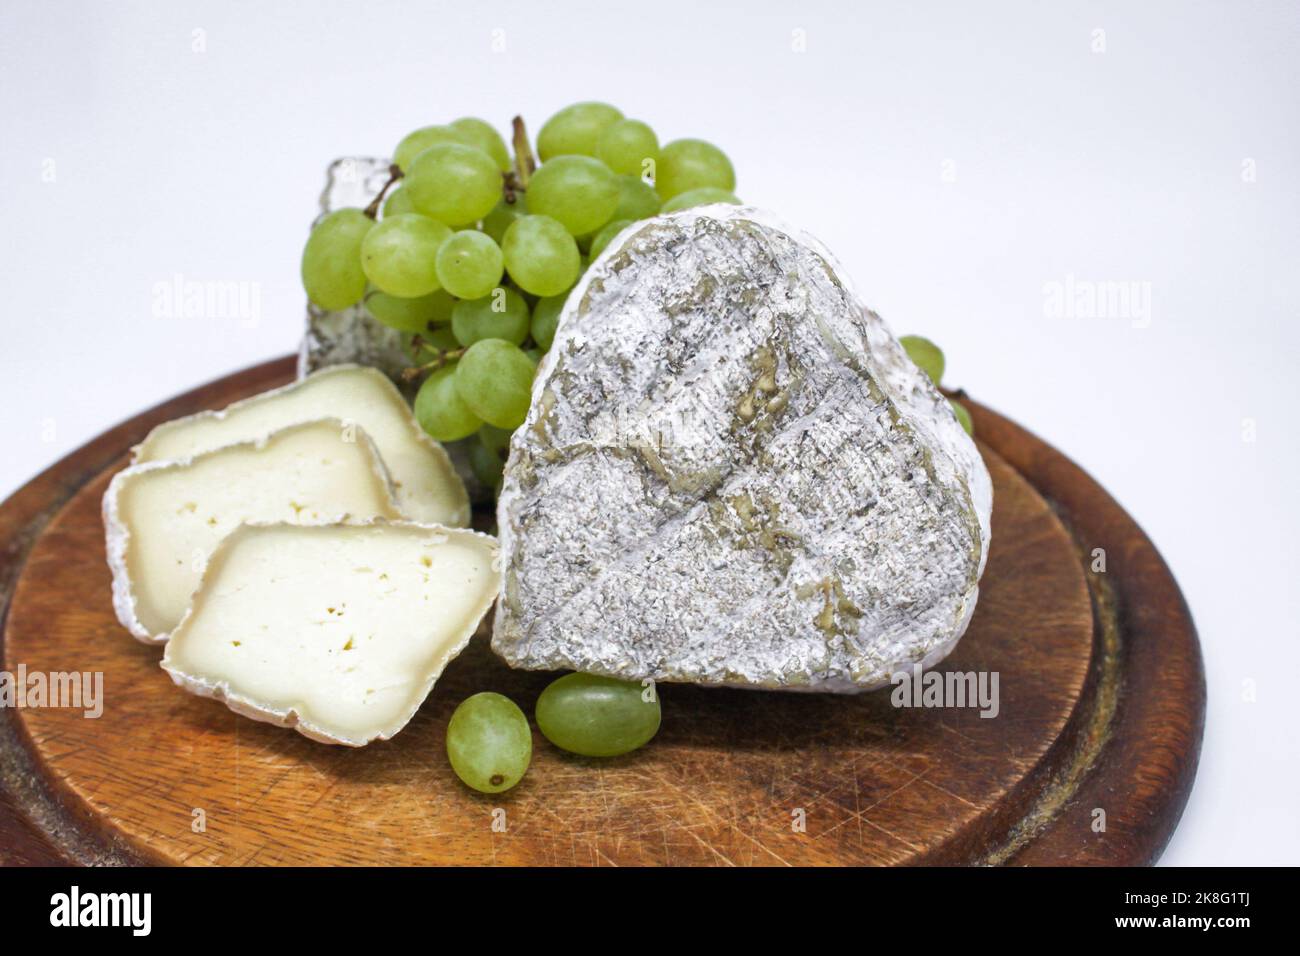 Assortiment de fromages bleu moldy lait de chèvre sur une planche à découper en bois avec des raisins verts. Arrière-plan blanc. Banque D'Images